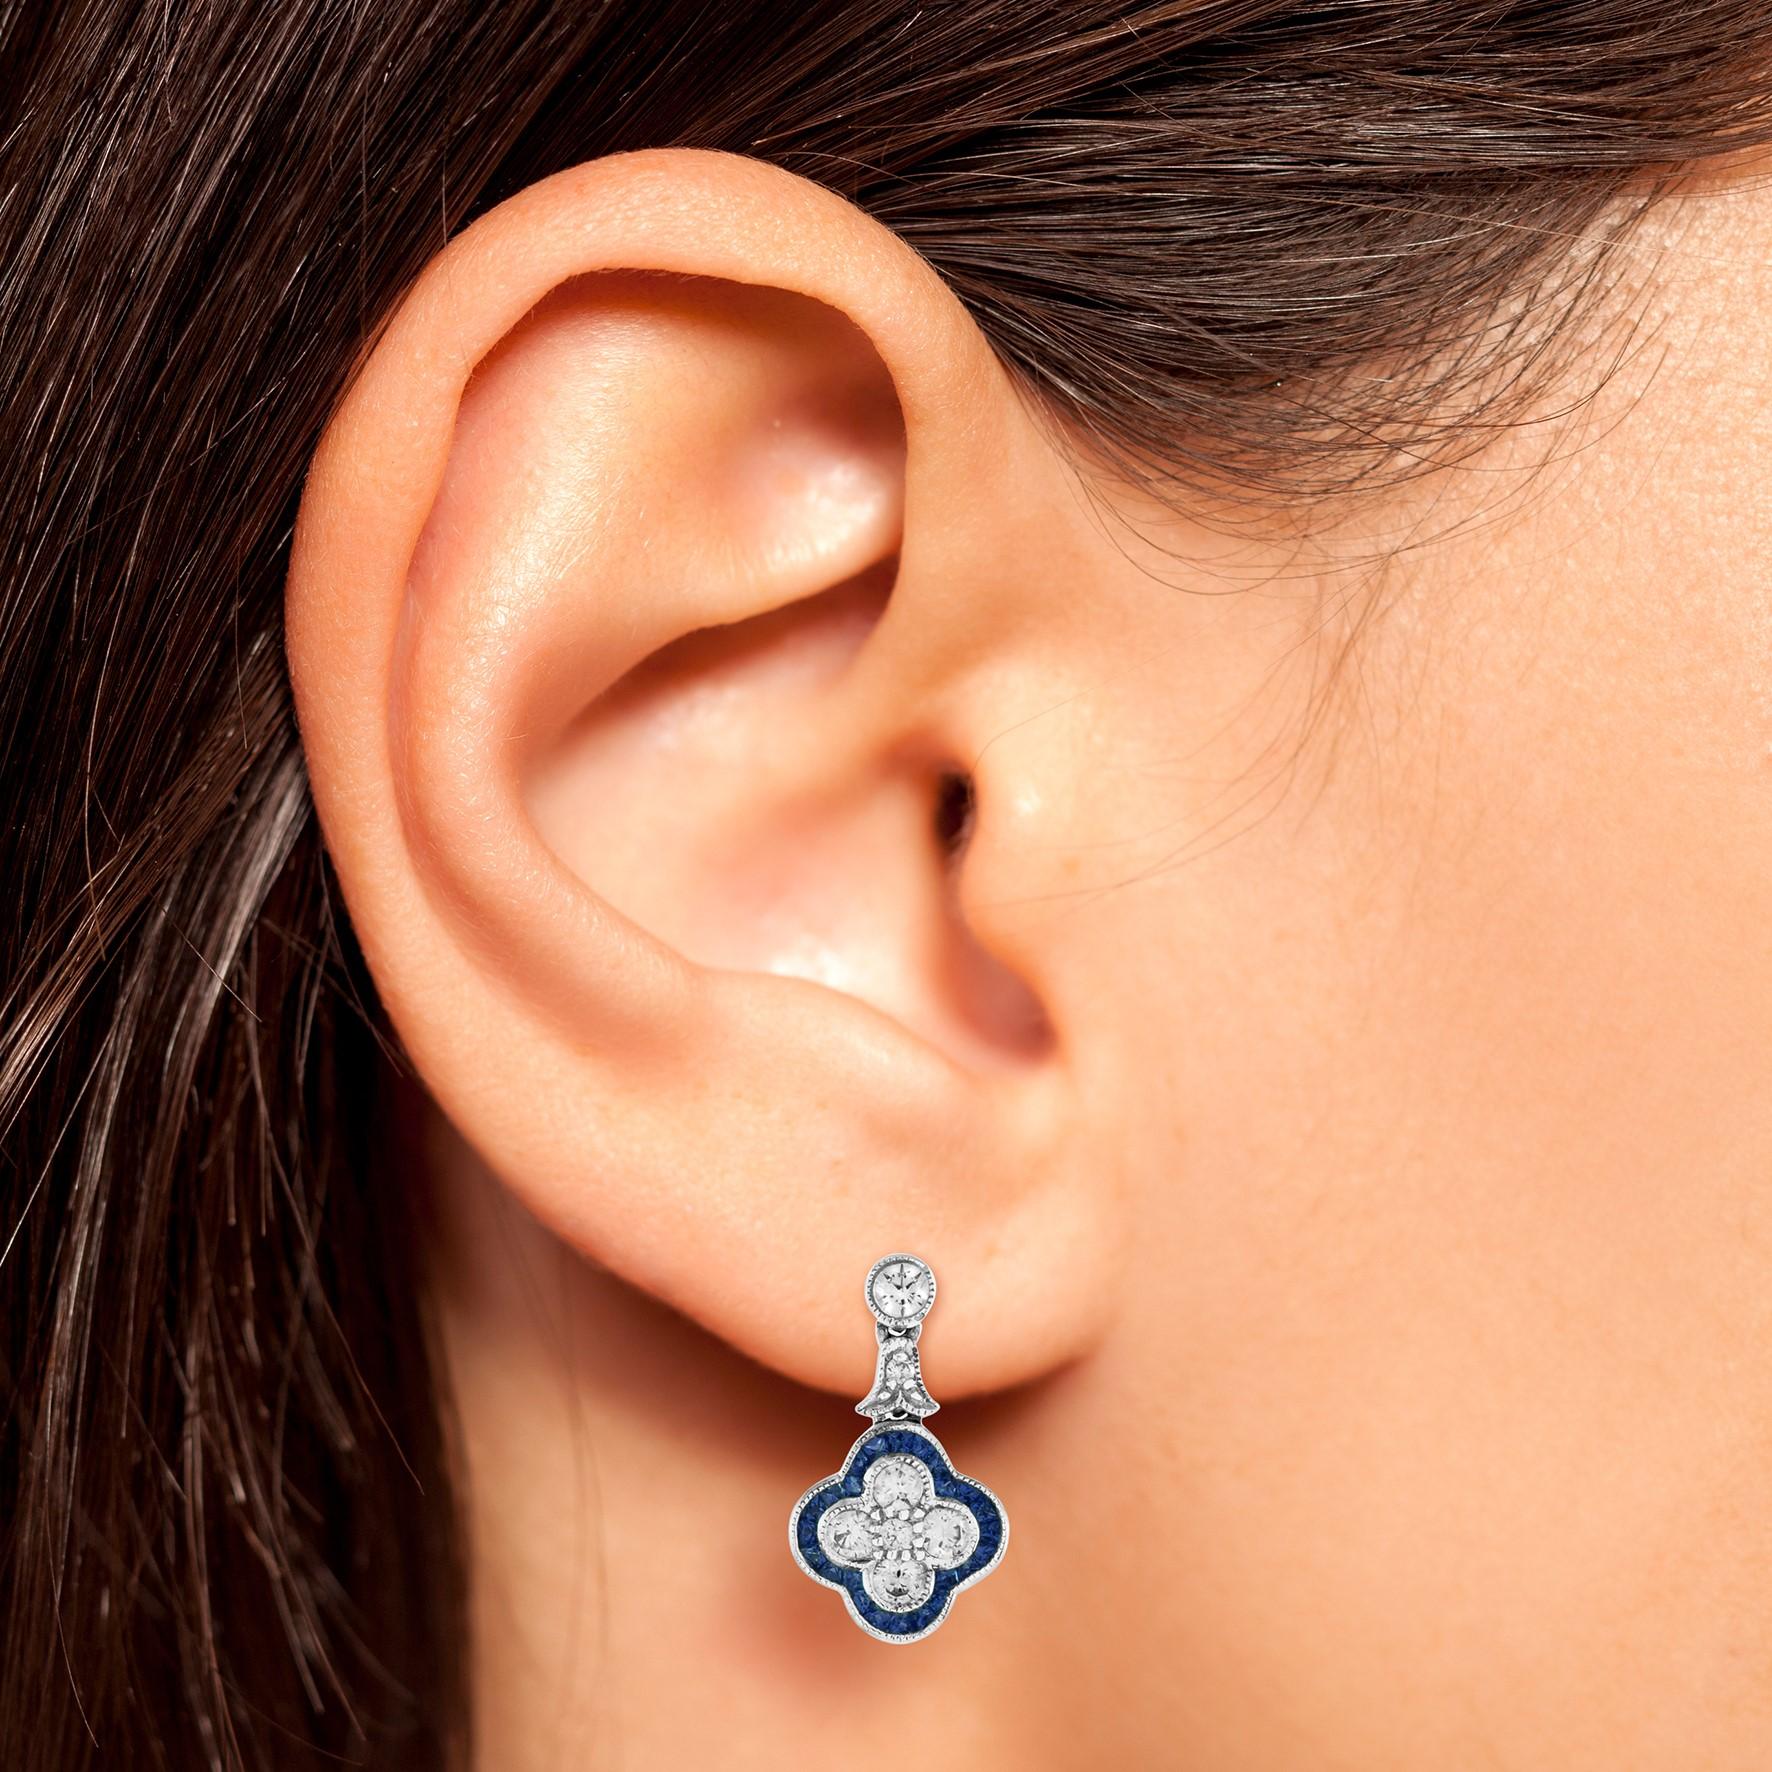 Cette jolie paire de boucles d'oreilles est destinée à tous ceux qui aiment les bijoux d'inspiration ancienne. Composé d'un éblouissant diamant de taille ronde et d'un saphir de taille française serti sur de l'or blanc 18 carats. Un total de